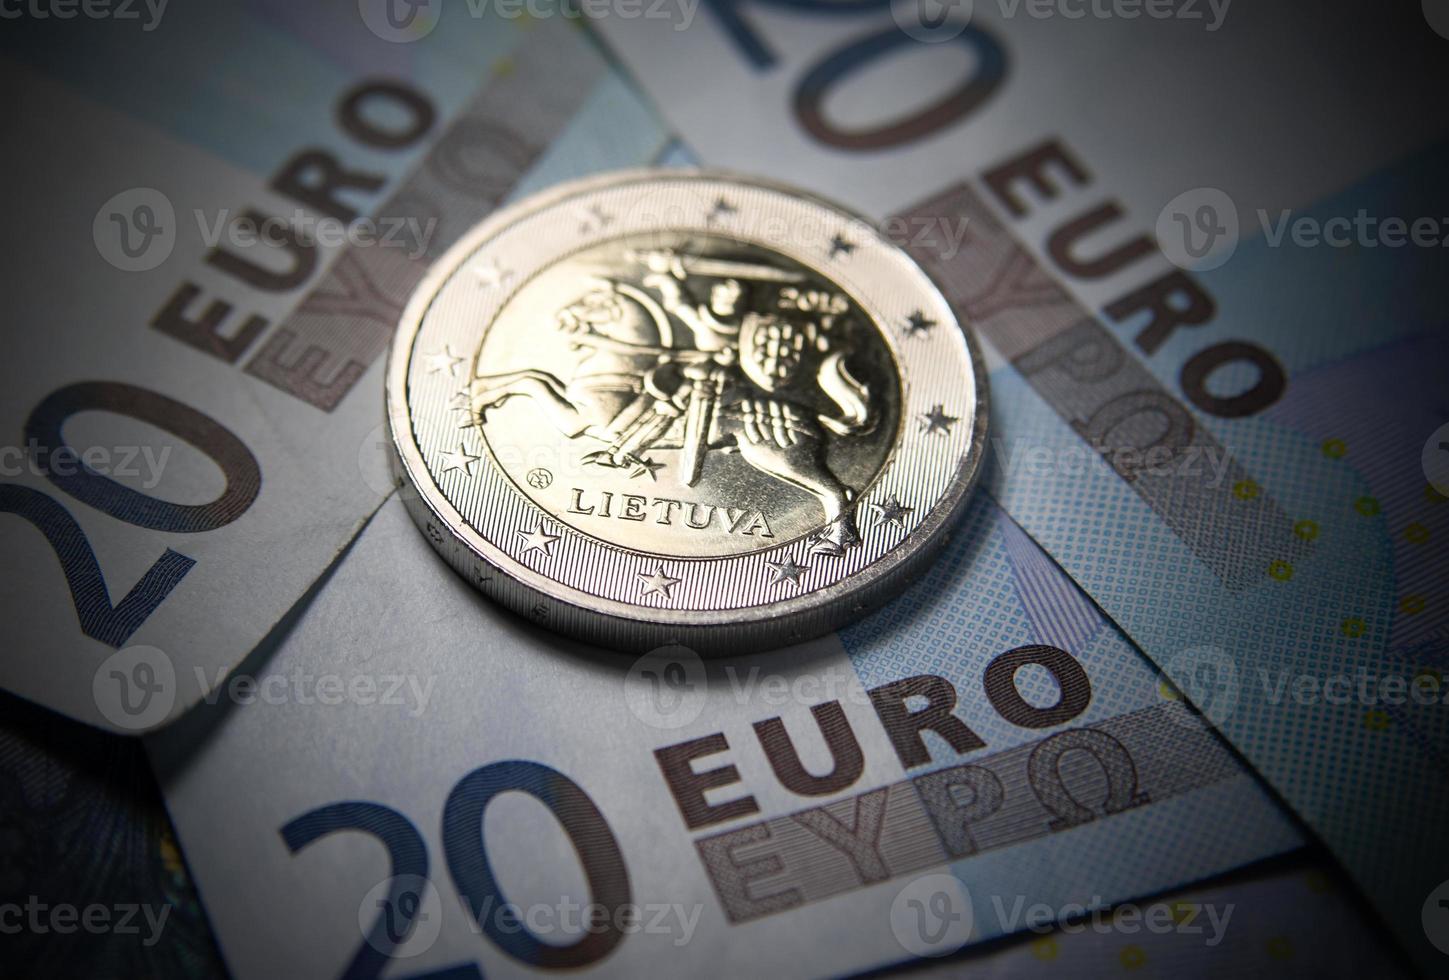 dinheiro novo em euros da lituânia foto